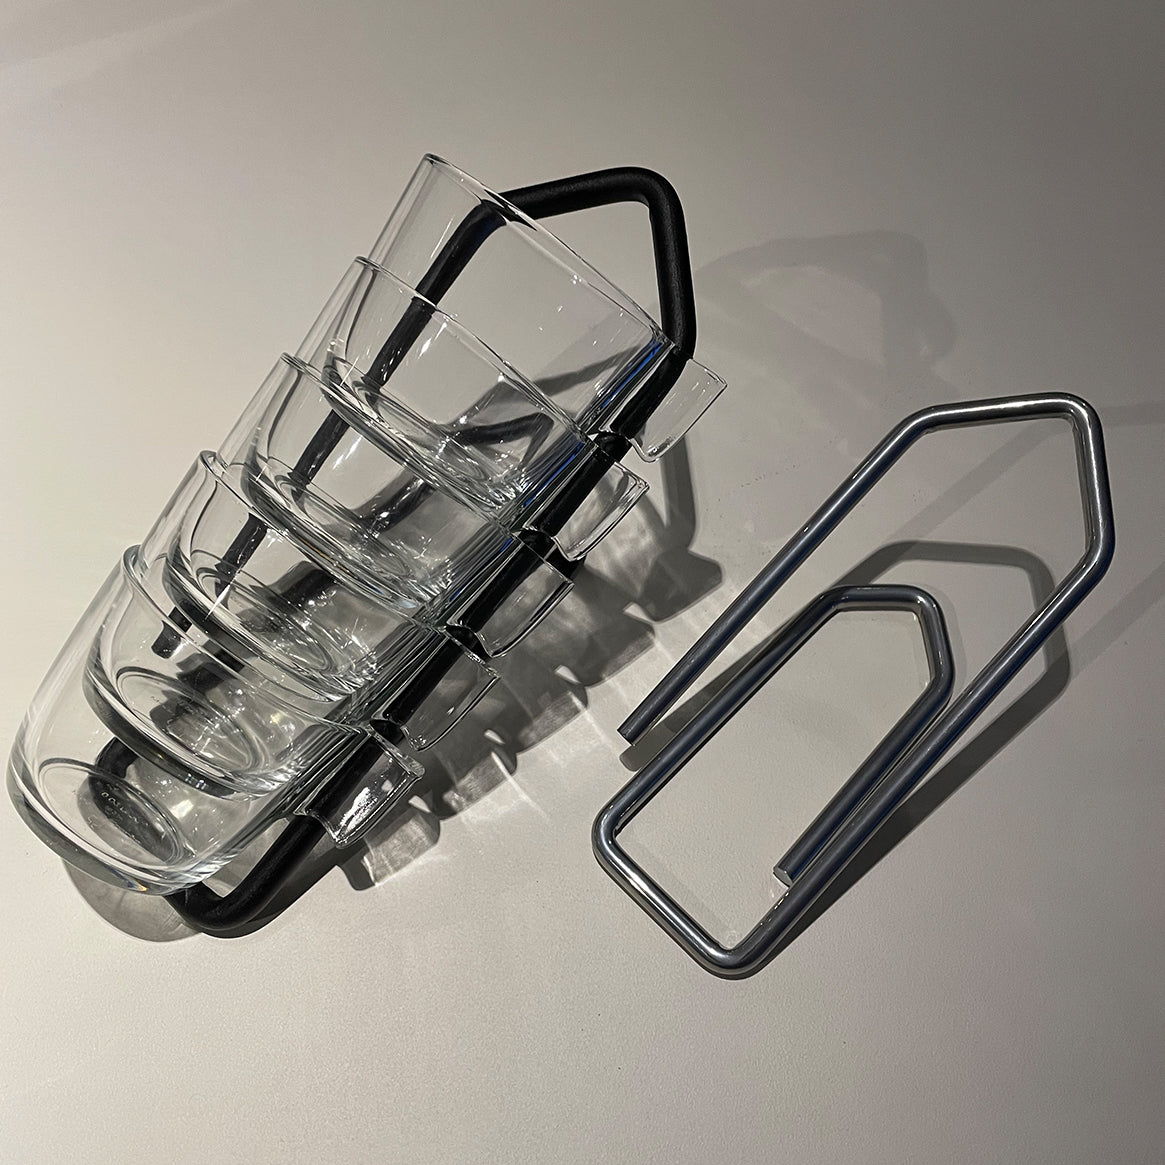 Gem - Bottle holder / Ceiling hanger - Matt Svart Sablé